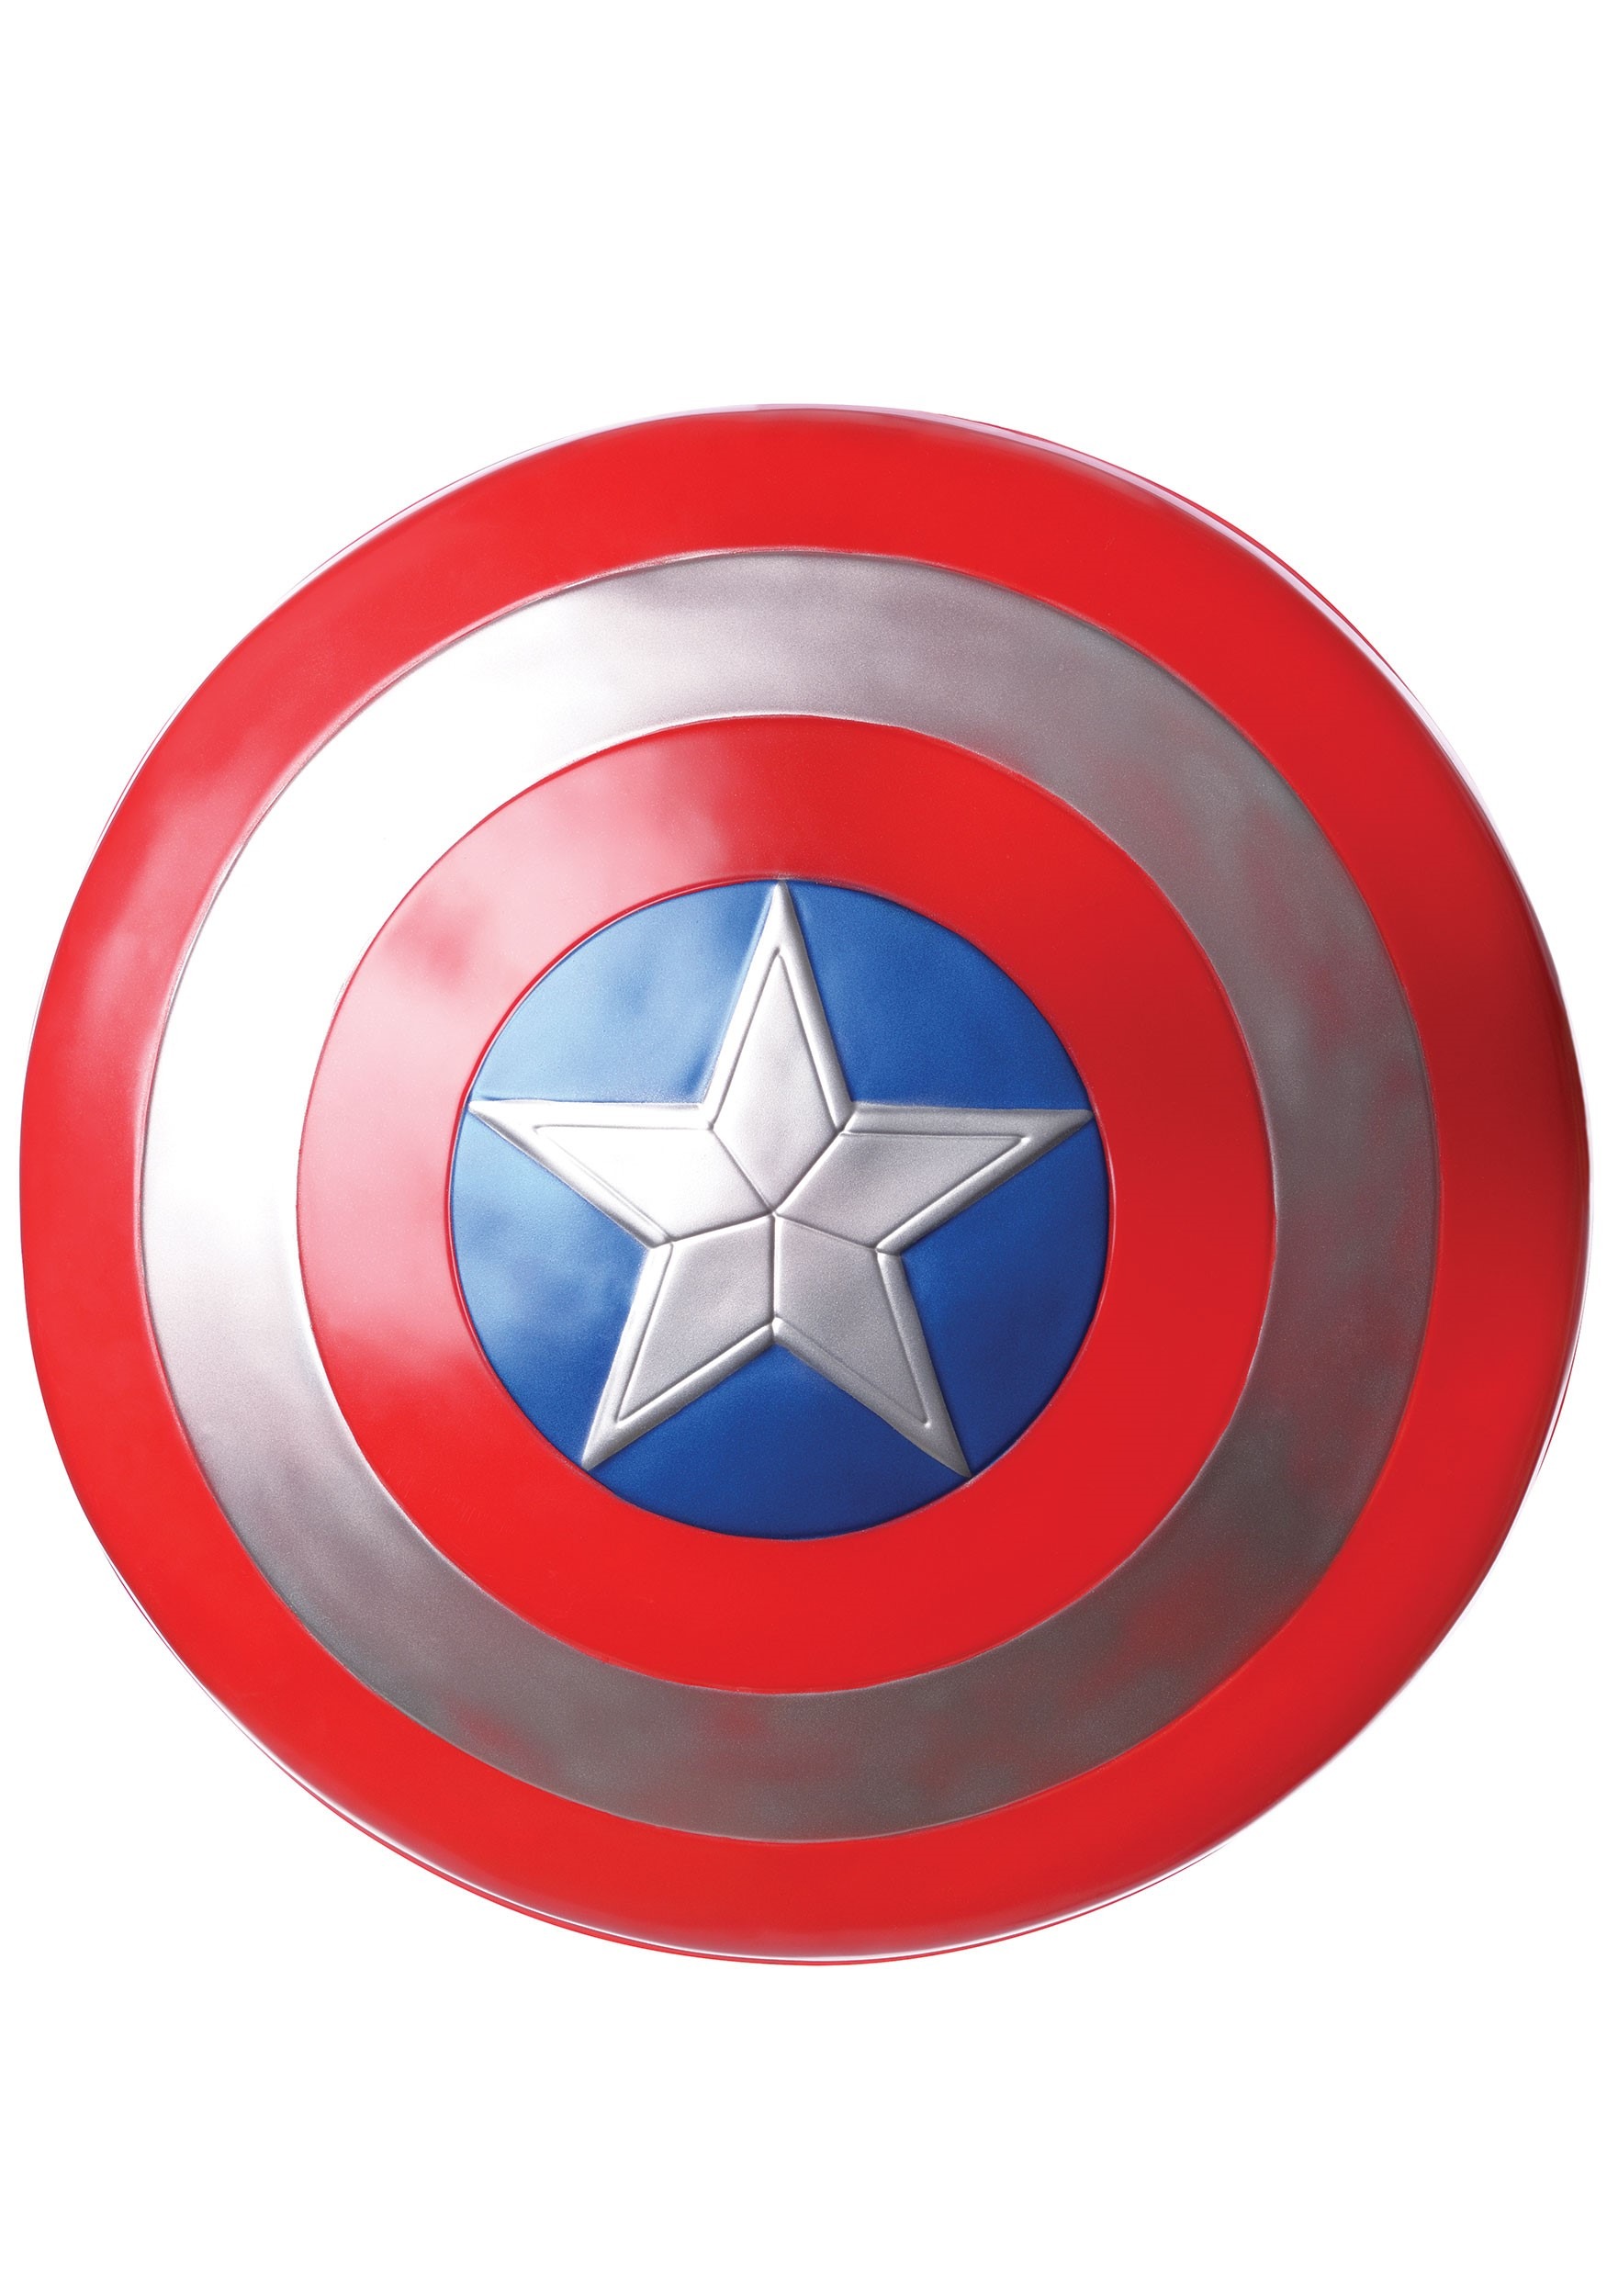 Avengers Endgame Captain America Shield 24